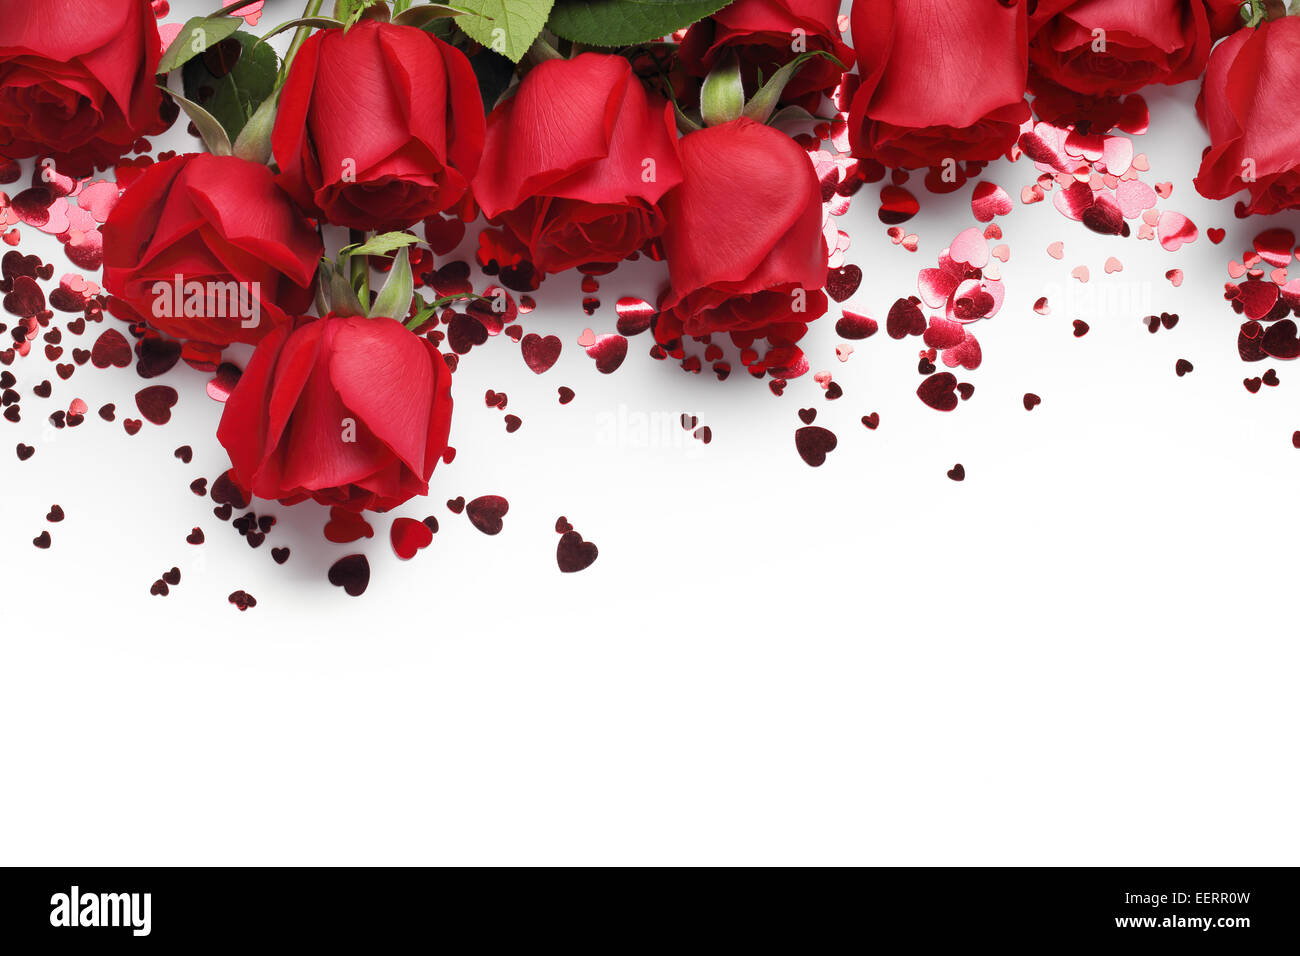 Rote Rosen und Herzen Form Ornamente auf weißem Hintergrund Stockfoto